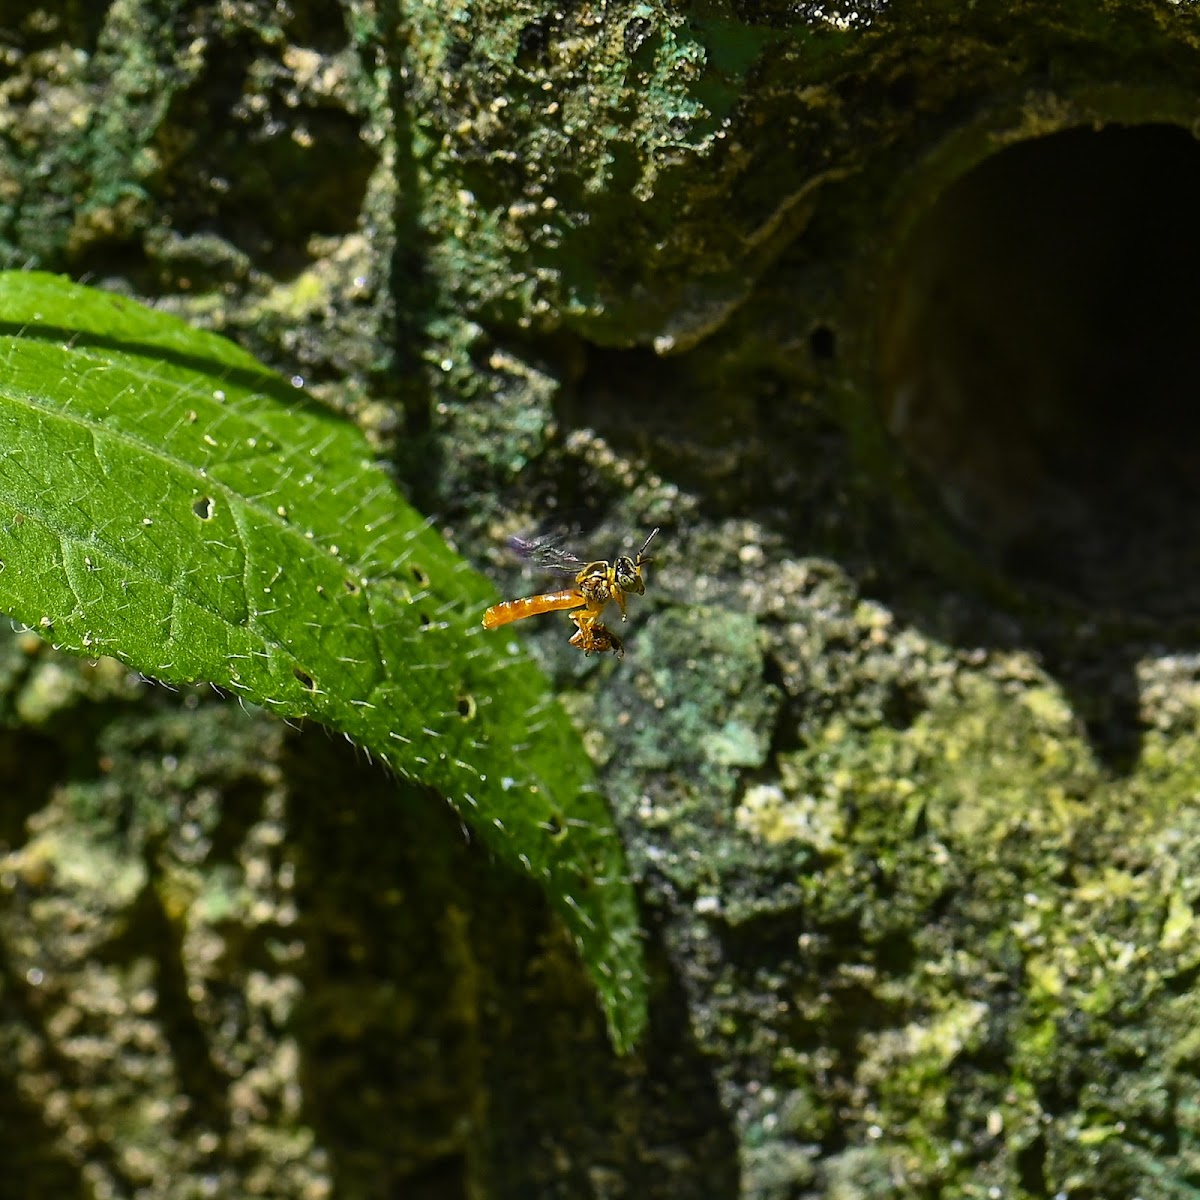 Narrow Stingless Bee Tetragonisca angustula